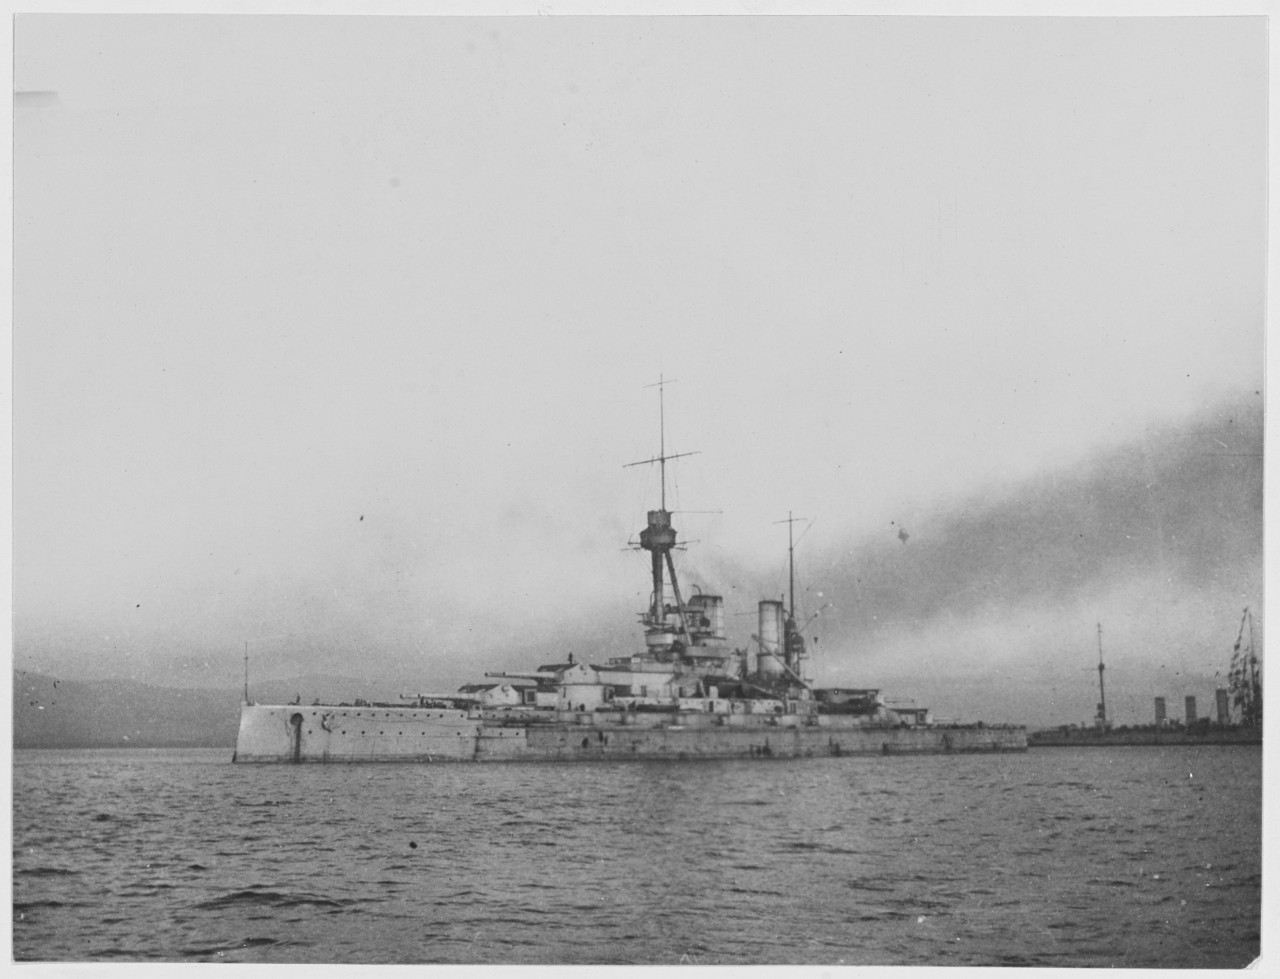 German Battleship BADEN, their edition of the QUEEN ELIZABETH